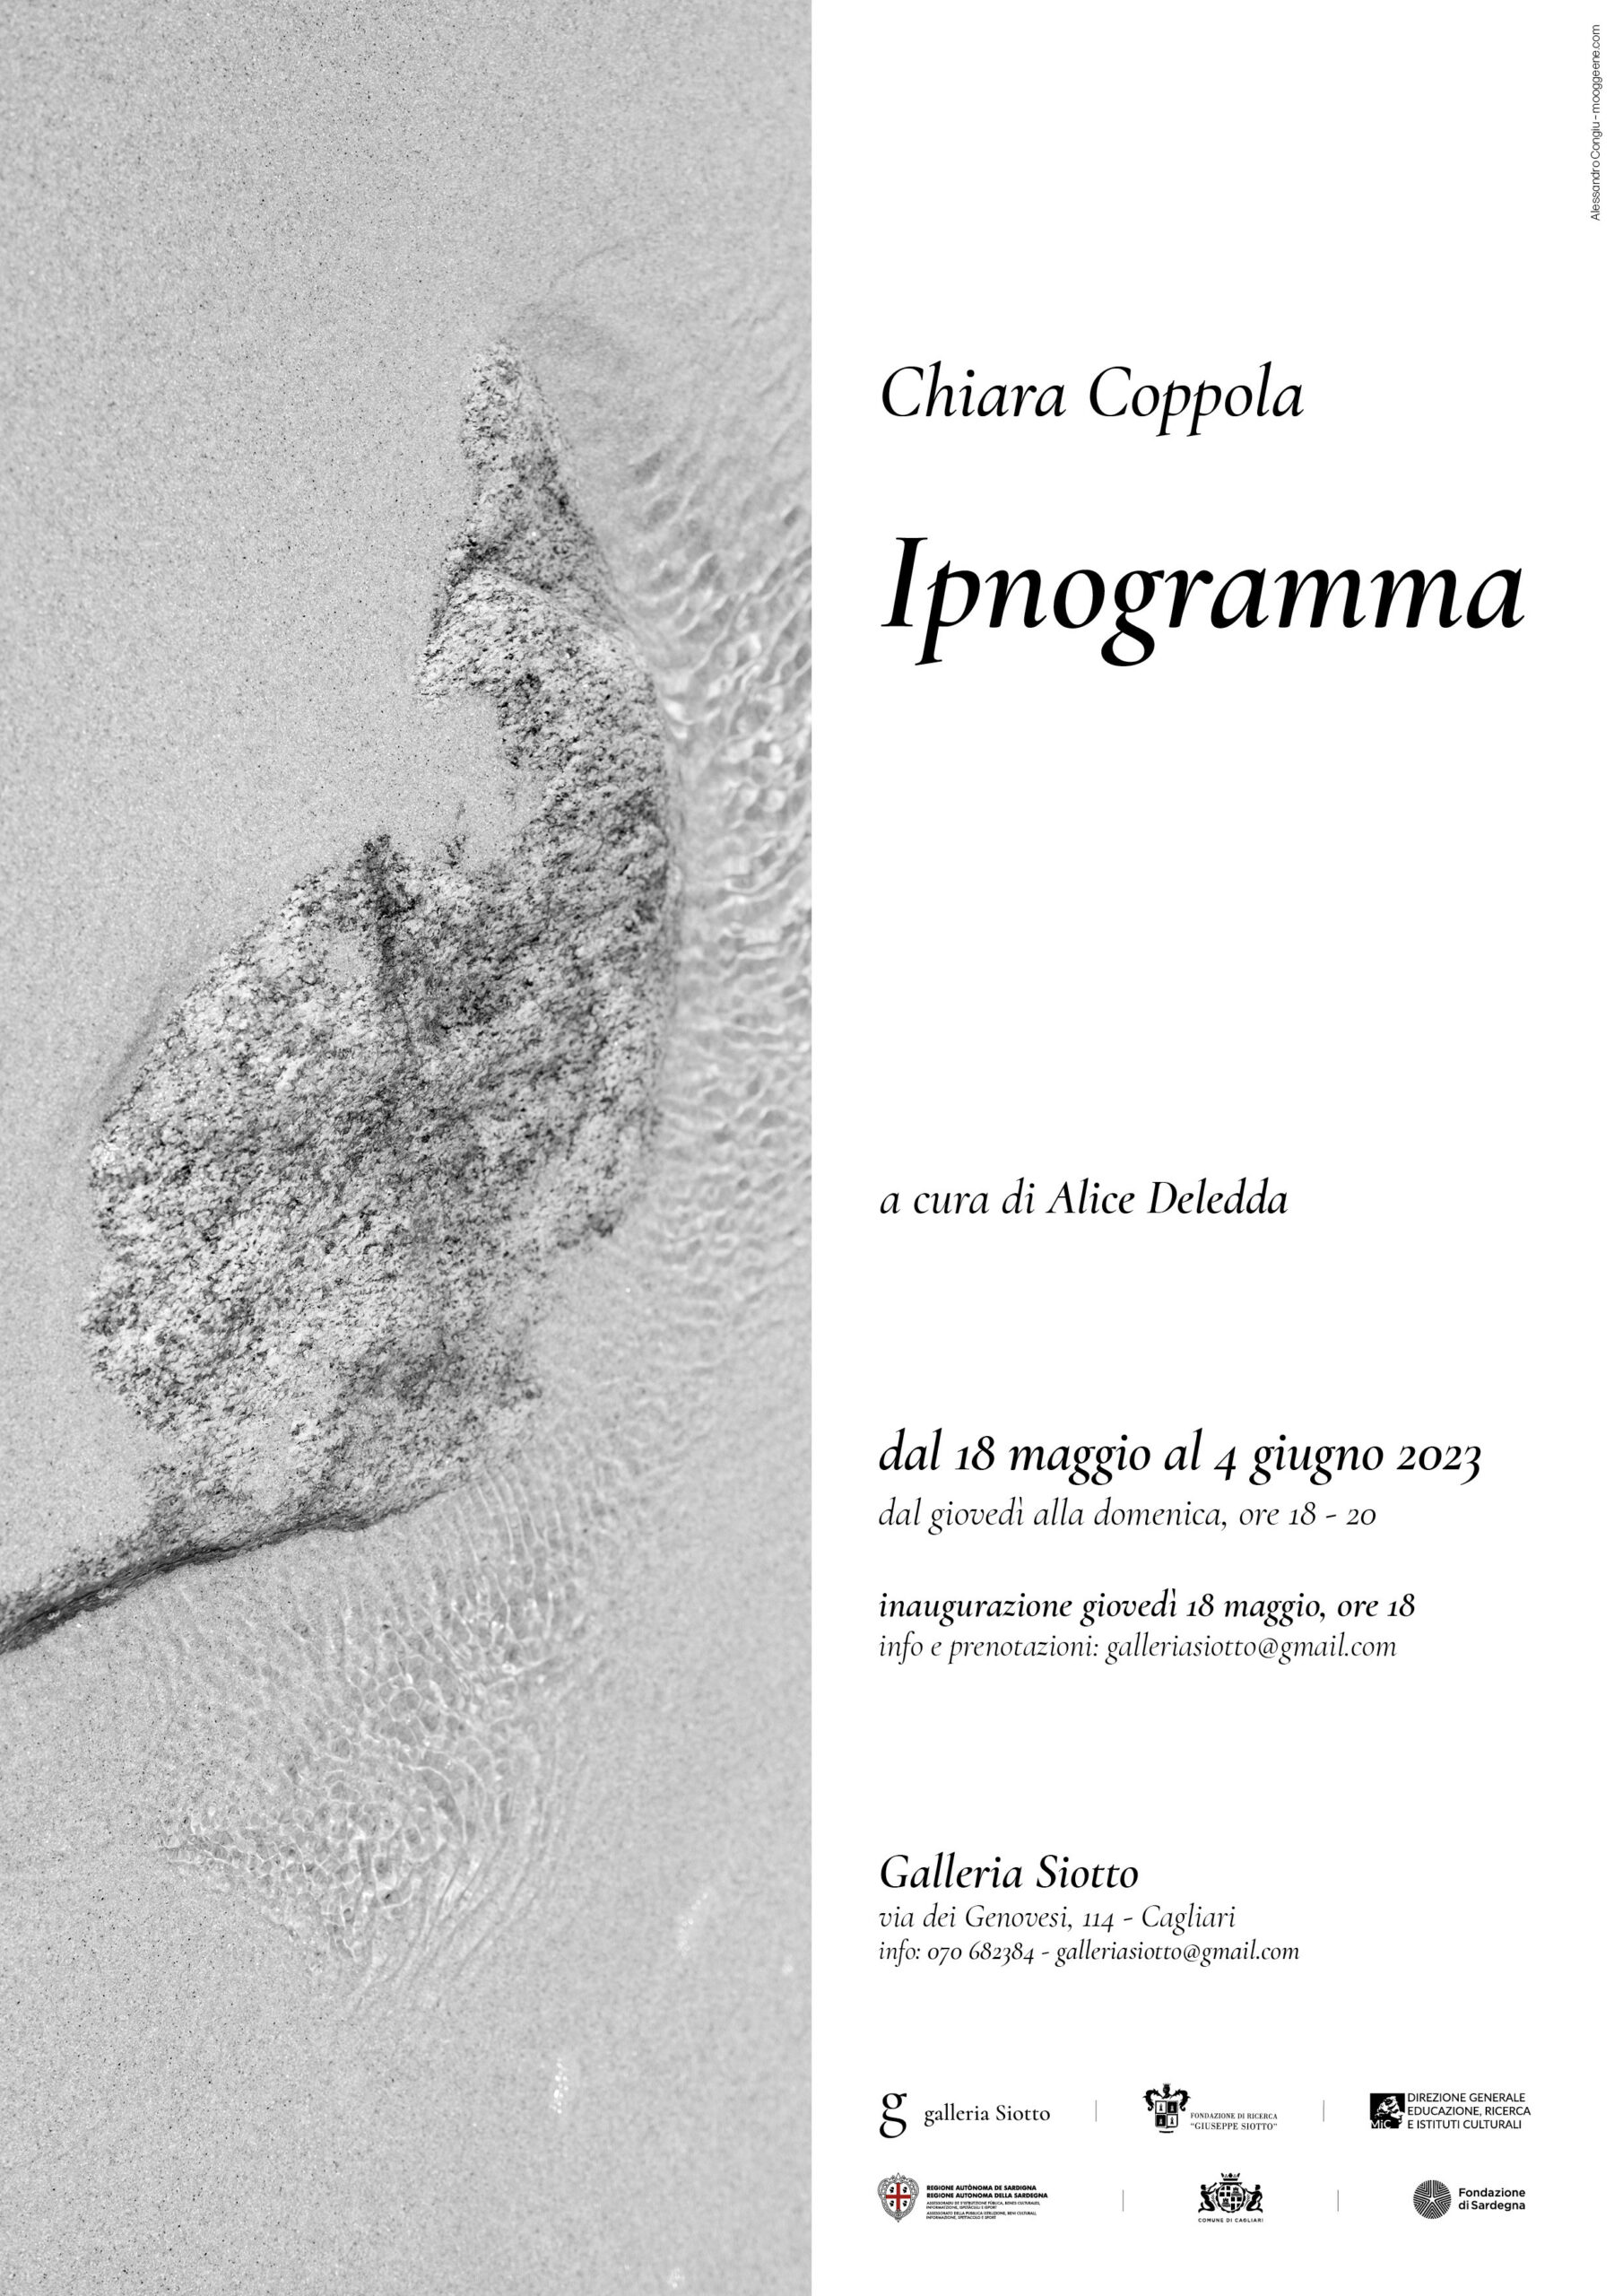 Al momento stai visualizzando Ipnogramma – Chiara Coppola